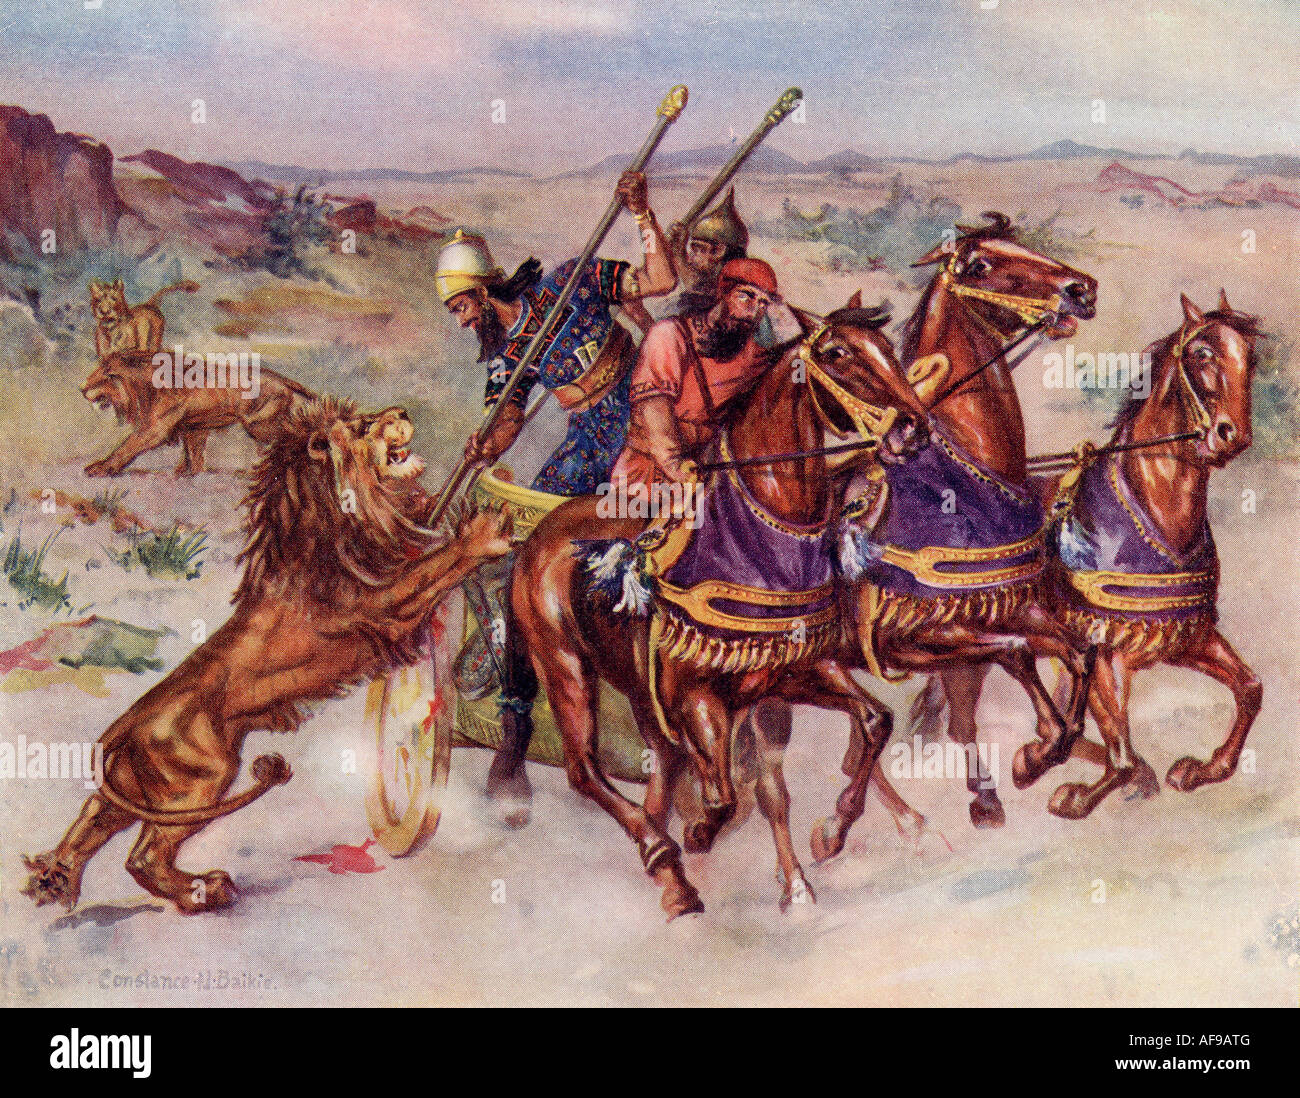 La chasse aux lions d'un roi assyrien Banque D'Images